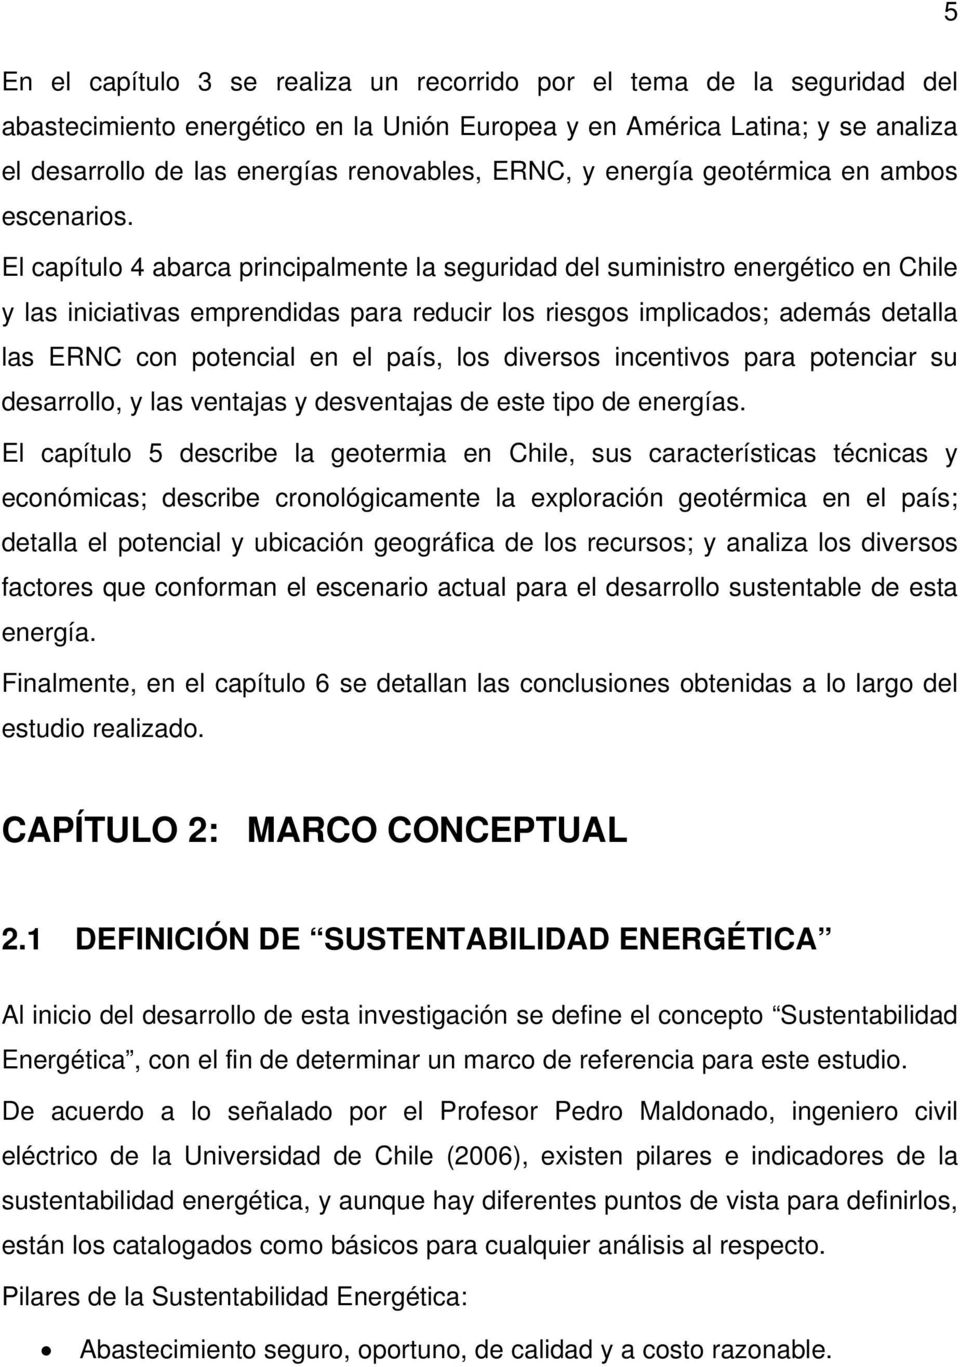 El capítulo 4 abarca principalmente la seguridad del suministro energético en Chile y las iniciativas emprendidas para reducir los riesgos implicados; además detalla las ERNC con potencial en el